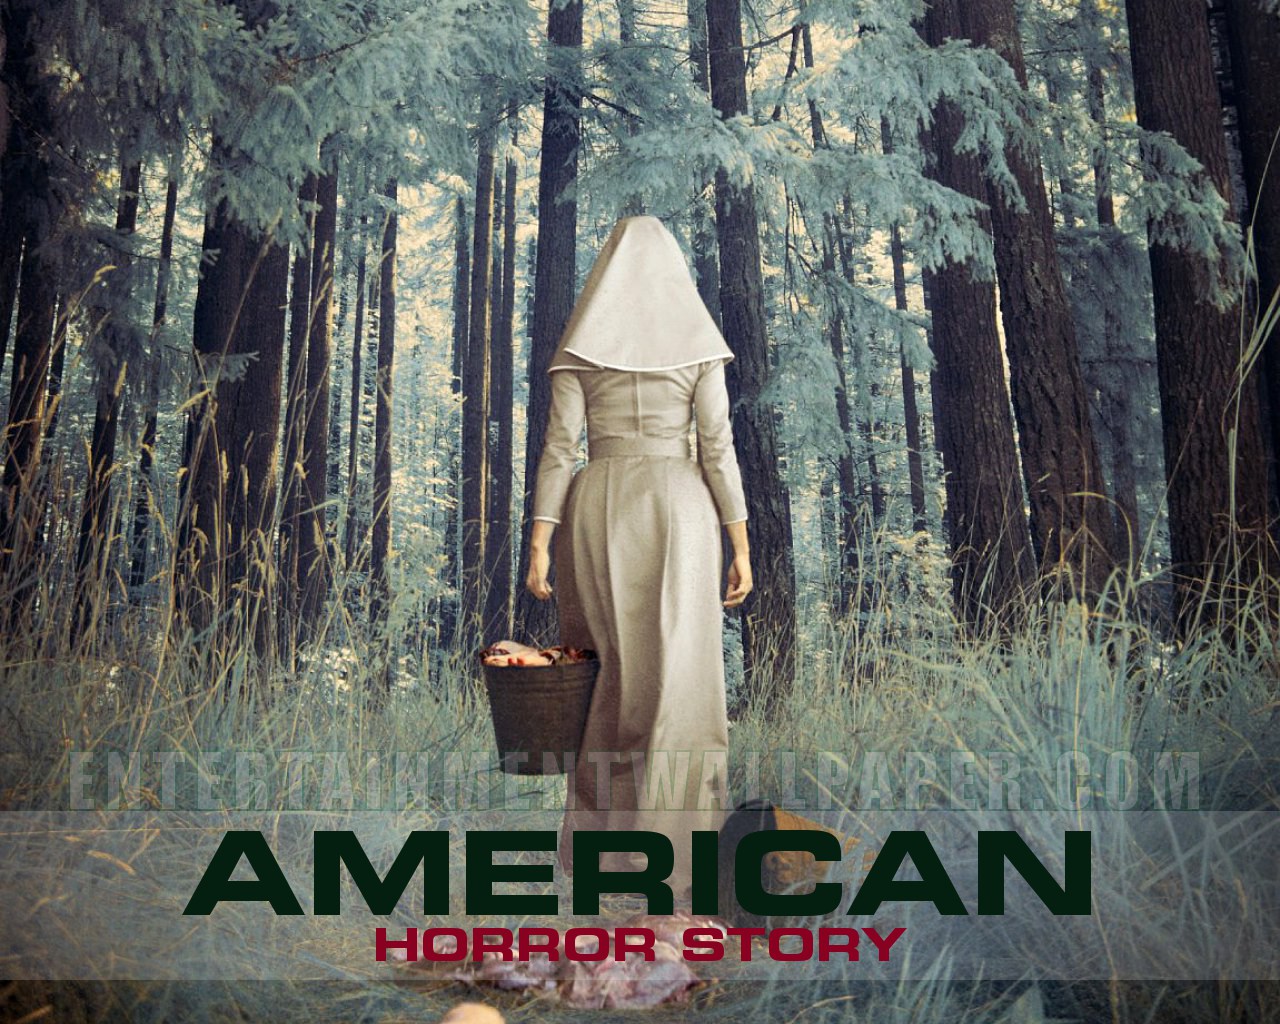 49+] American Horror Story Wallpapers - WallpaperSafari